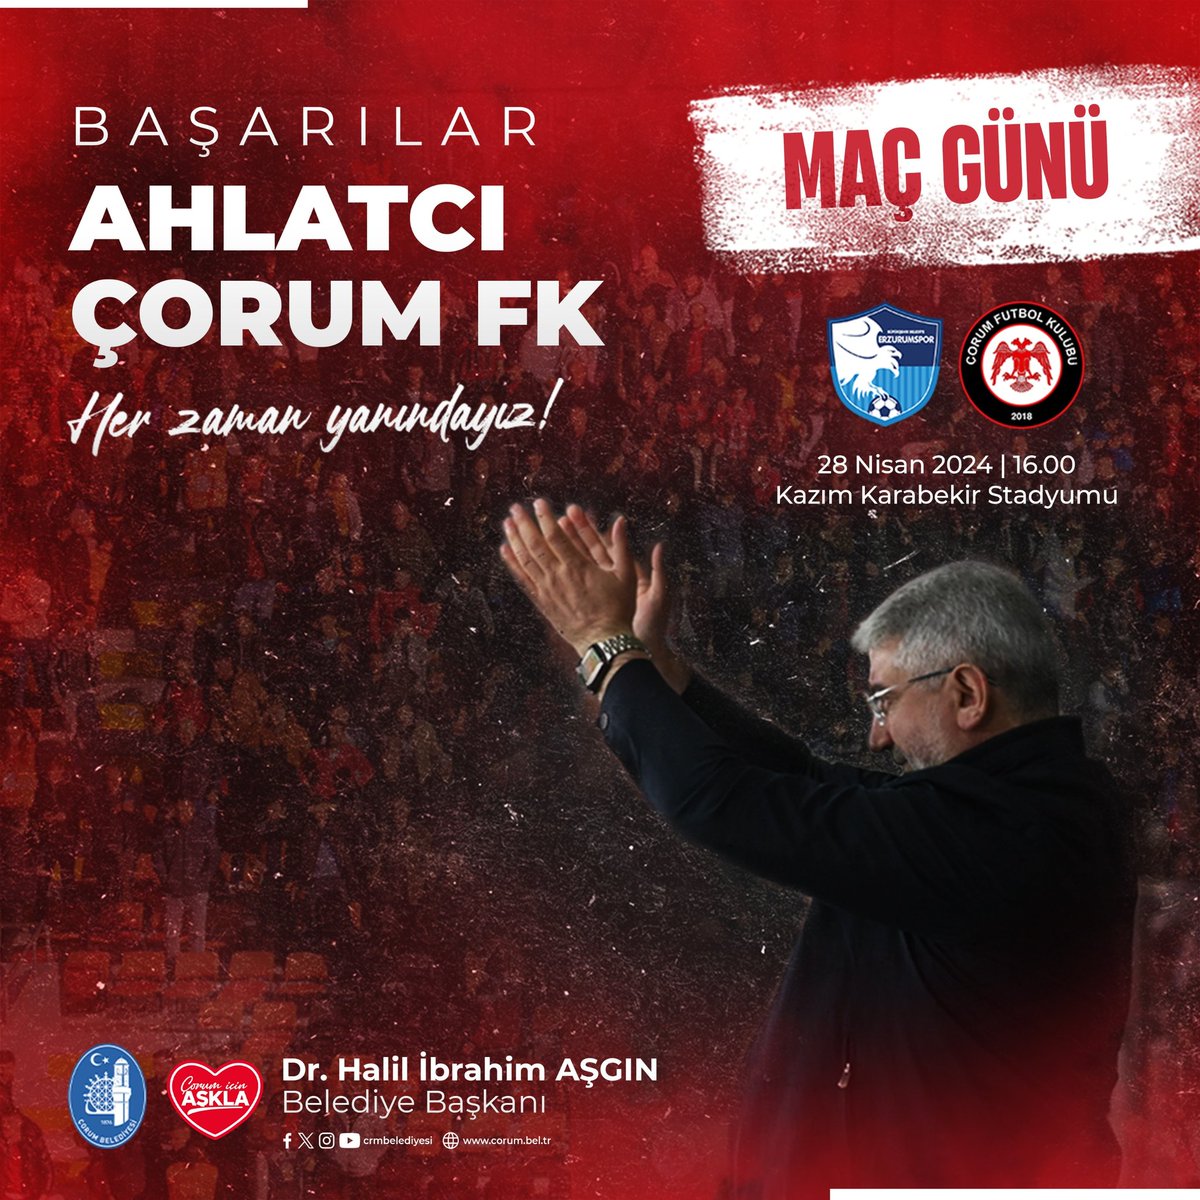 Vurduğunuz gol olsun @corumfk ❤️🖤 Erzurumspor karşısında, Süper Lig yolunda Ahlatcı Çorum Futbol Kulübümüze yürekten başarılar diliyorum. #maçgünü #AhlatcıÇorumFK